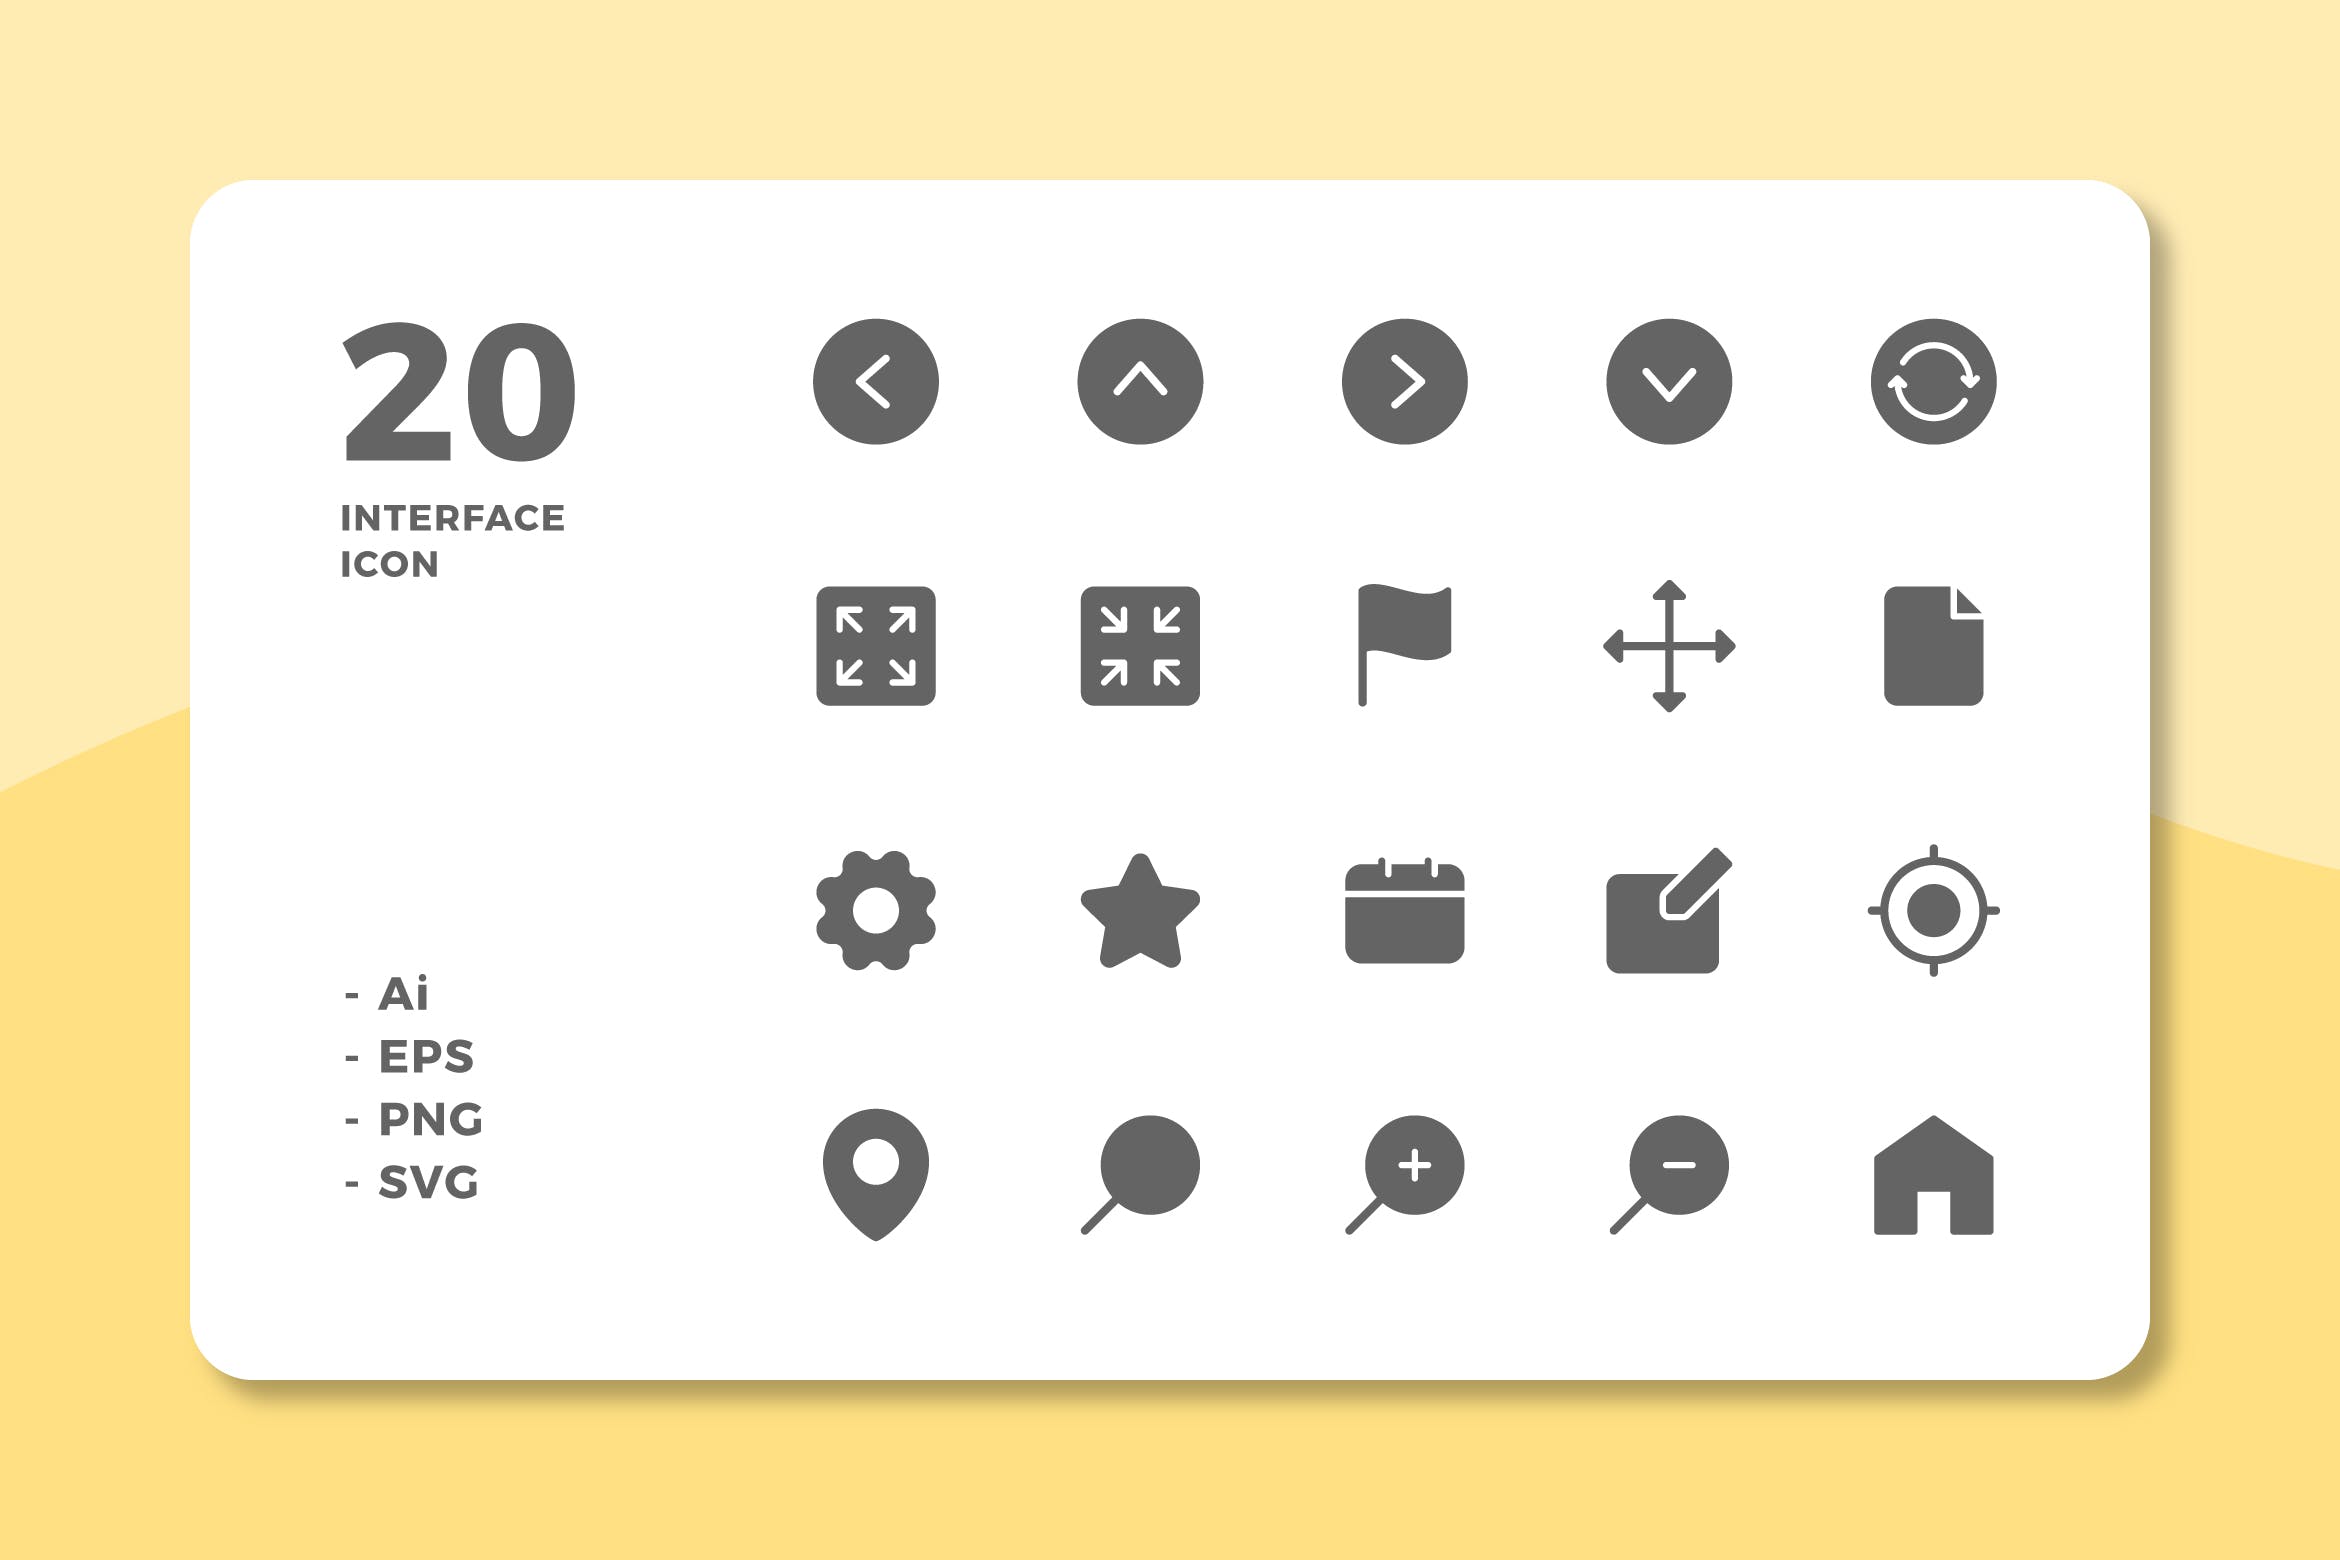 20枚UI界面设计APP操作选项素材天下精选图标v1 20 Interface Icons Vol.1 (Solid)插图